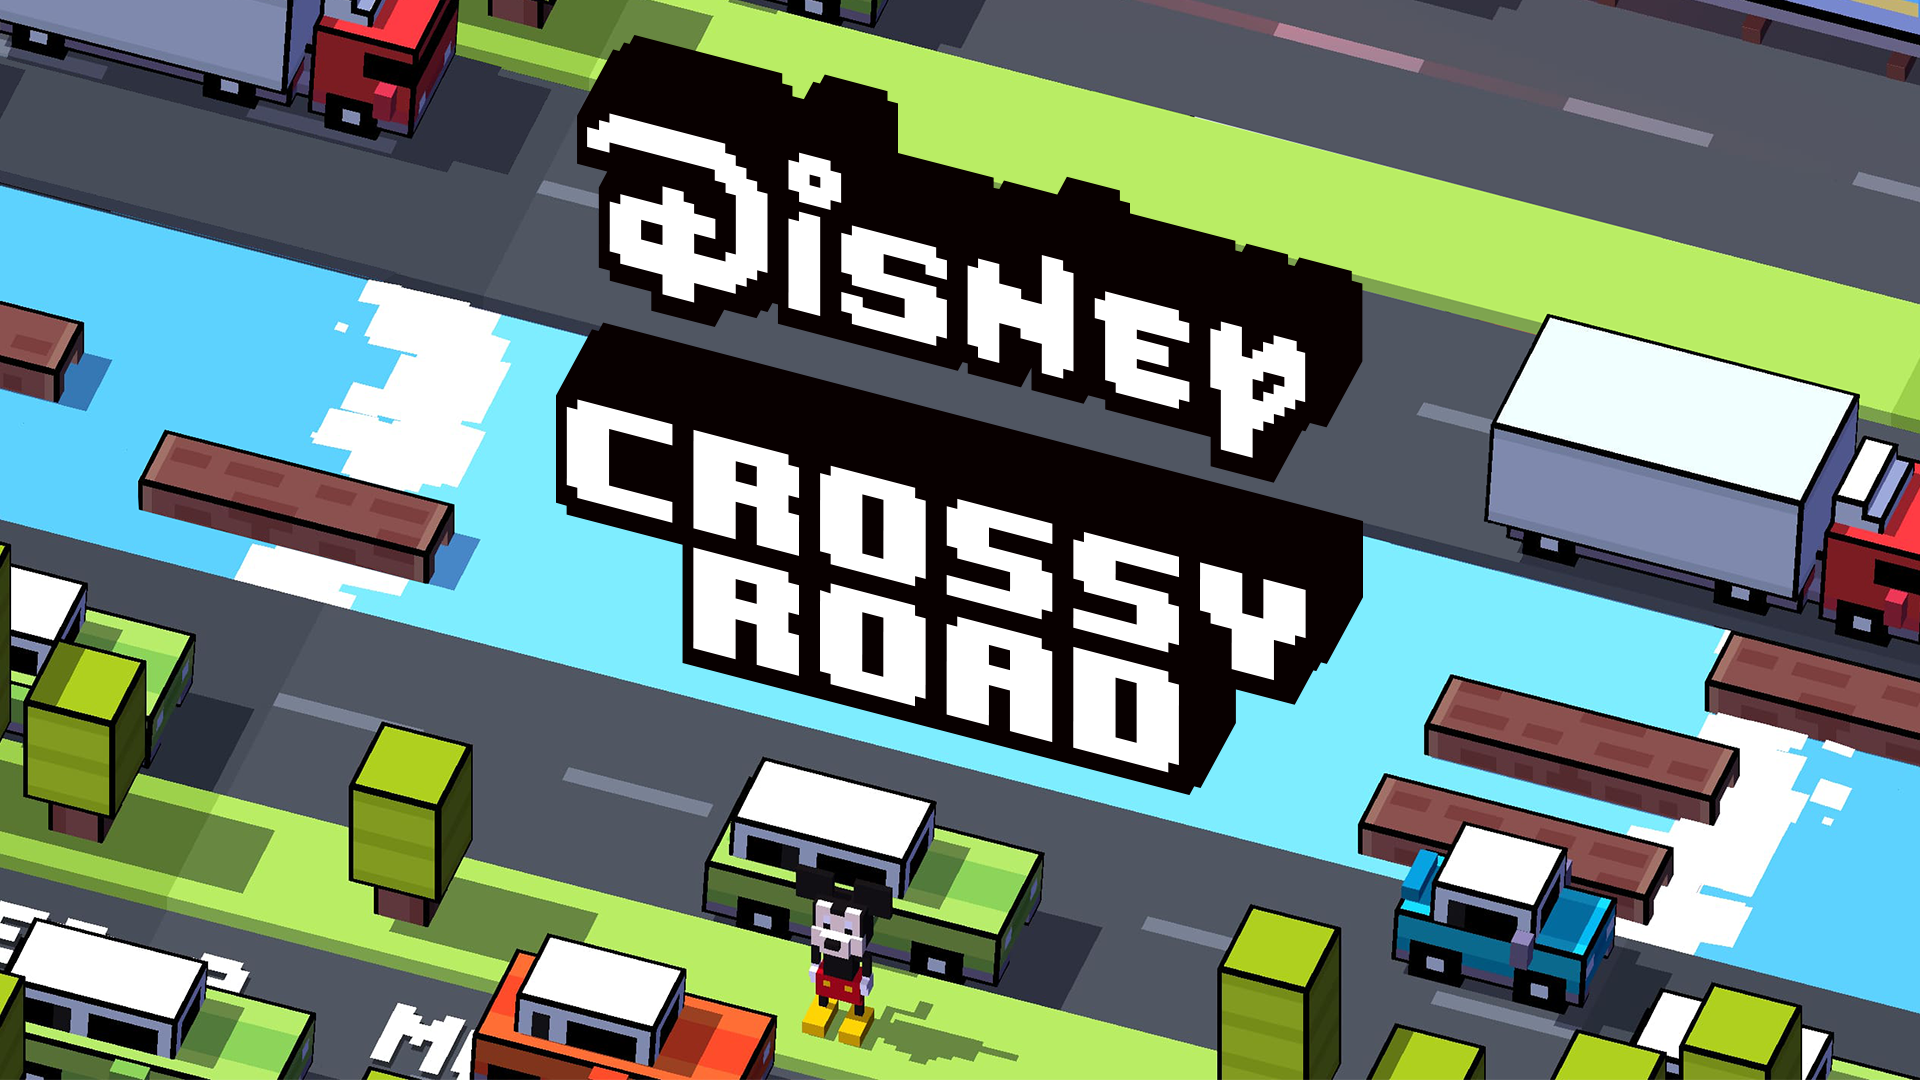 Disney Crossy Road screenshot 15